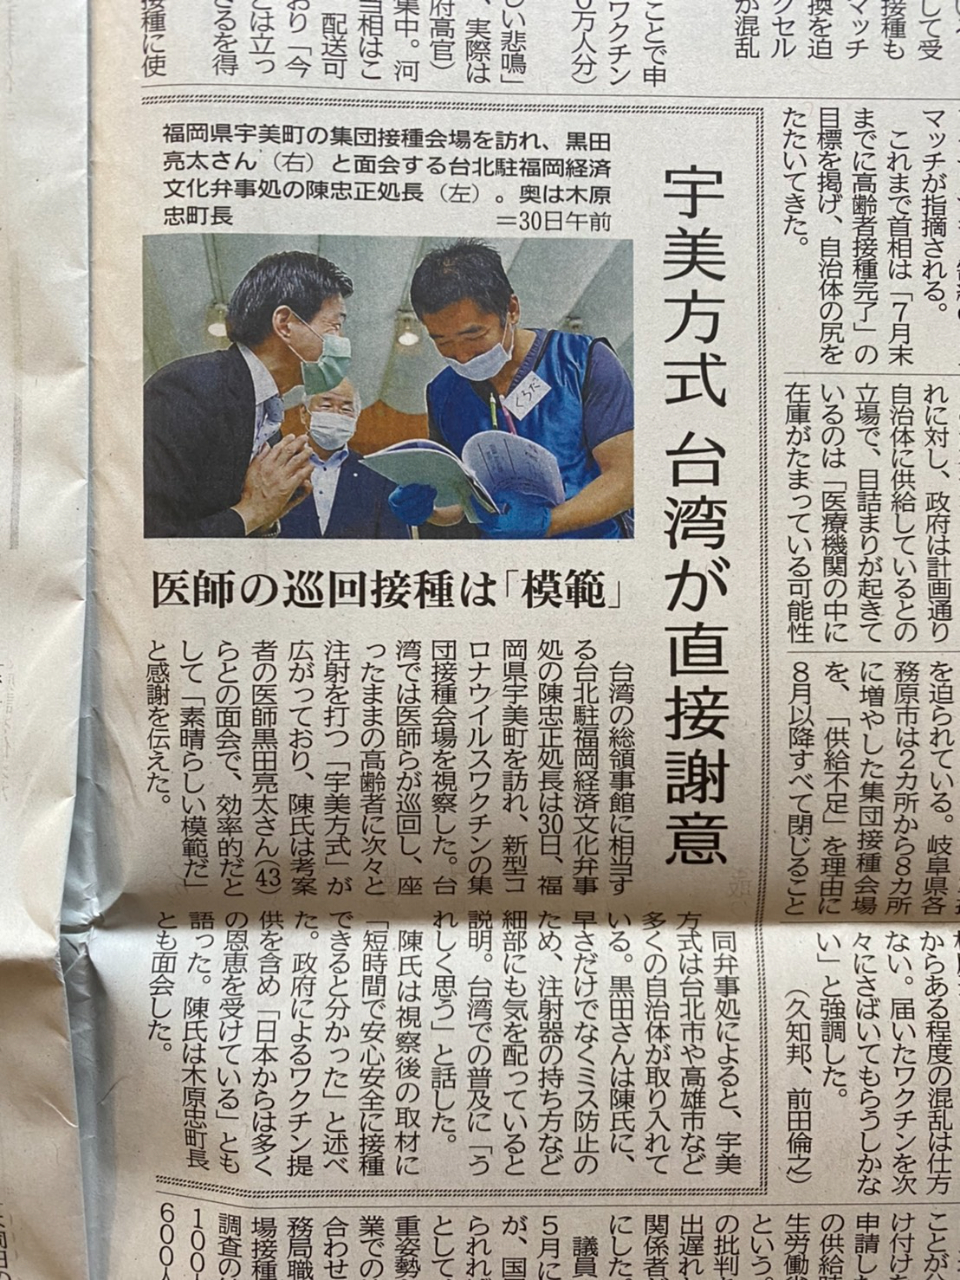 6月30日，陳處長拜會宇美町，訪問新型冠狀病毒集中接種疫苗會場。
7月1日西日本新聞報導陳處長拜會宇美町